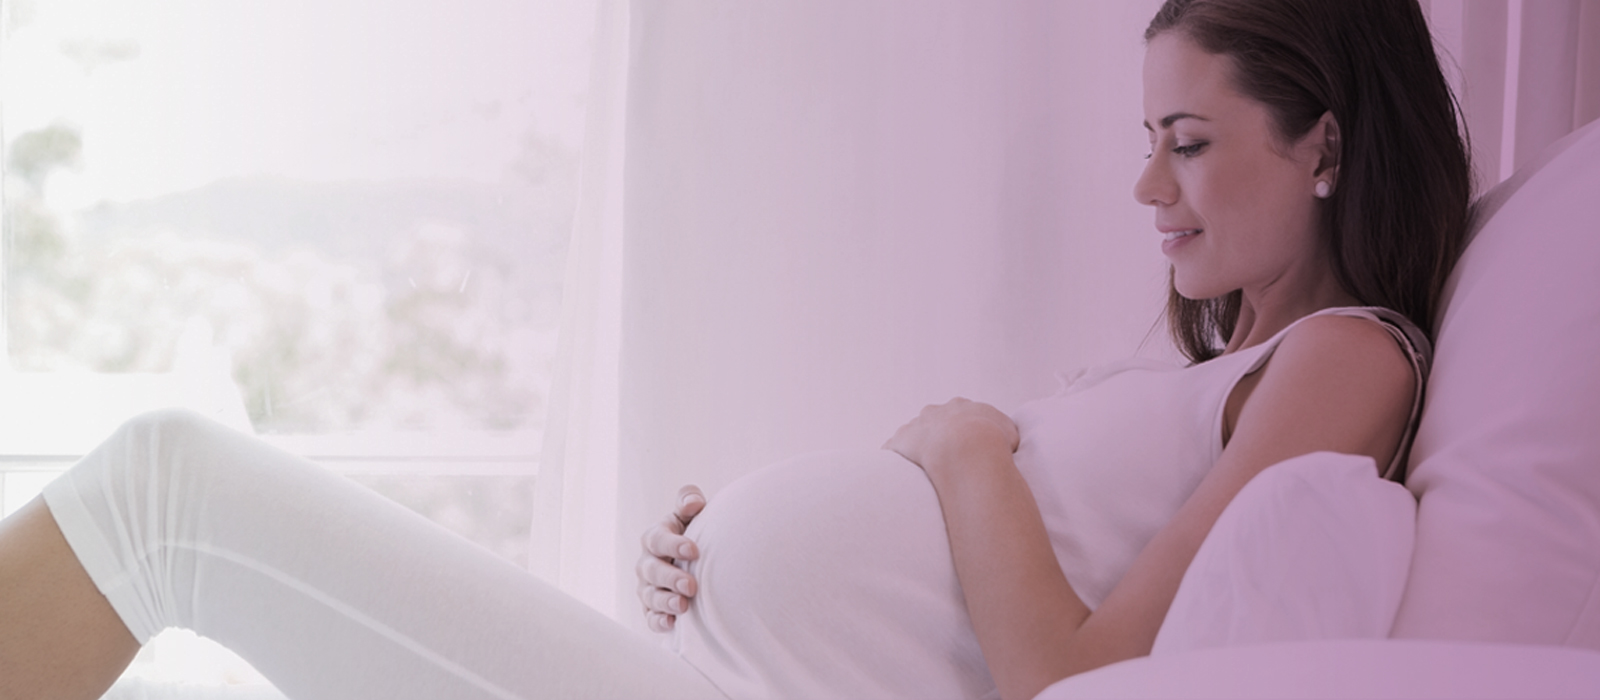 Los cambios fisiológicos reducen la calidad fértil. Si los ciclos menstruales son distintos, es momento de evaluar la fertilidad mediante el estudio de reserva ovárica para conocer tu salud fértil.